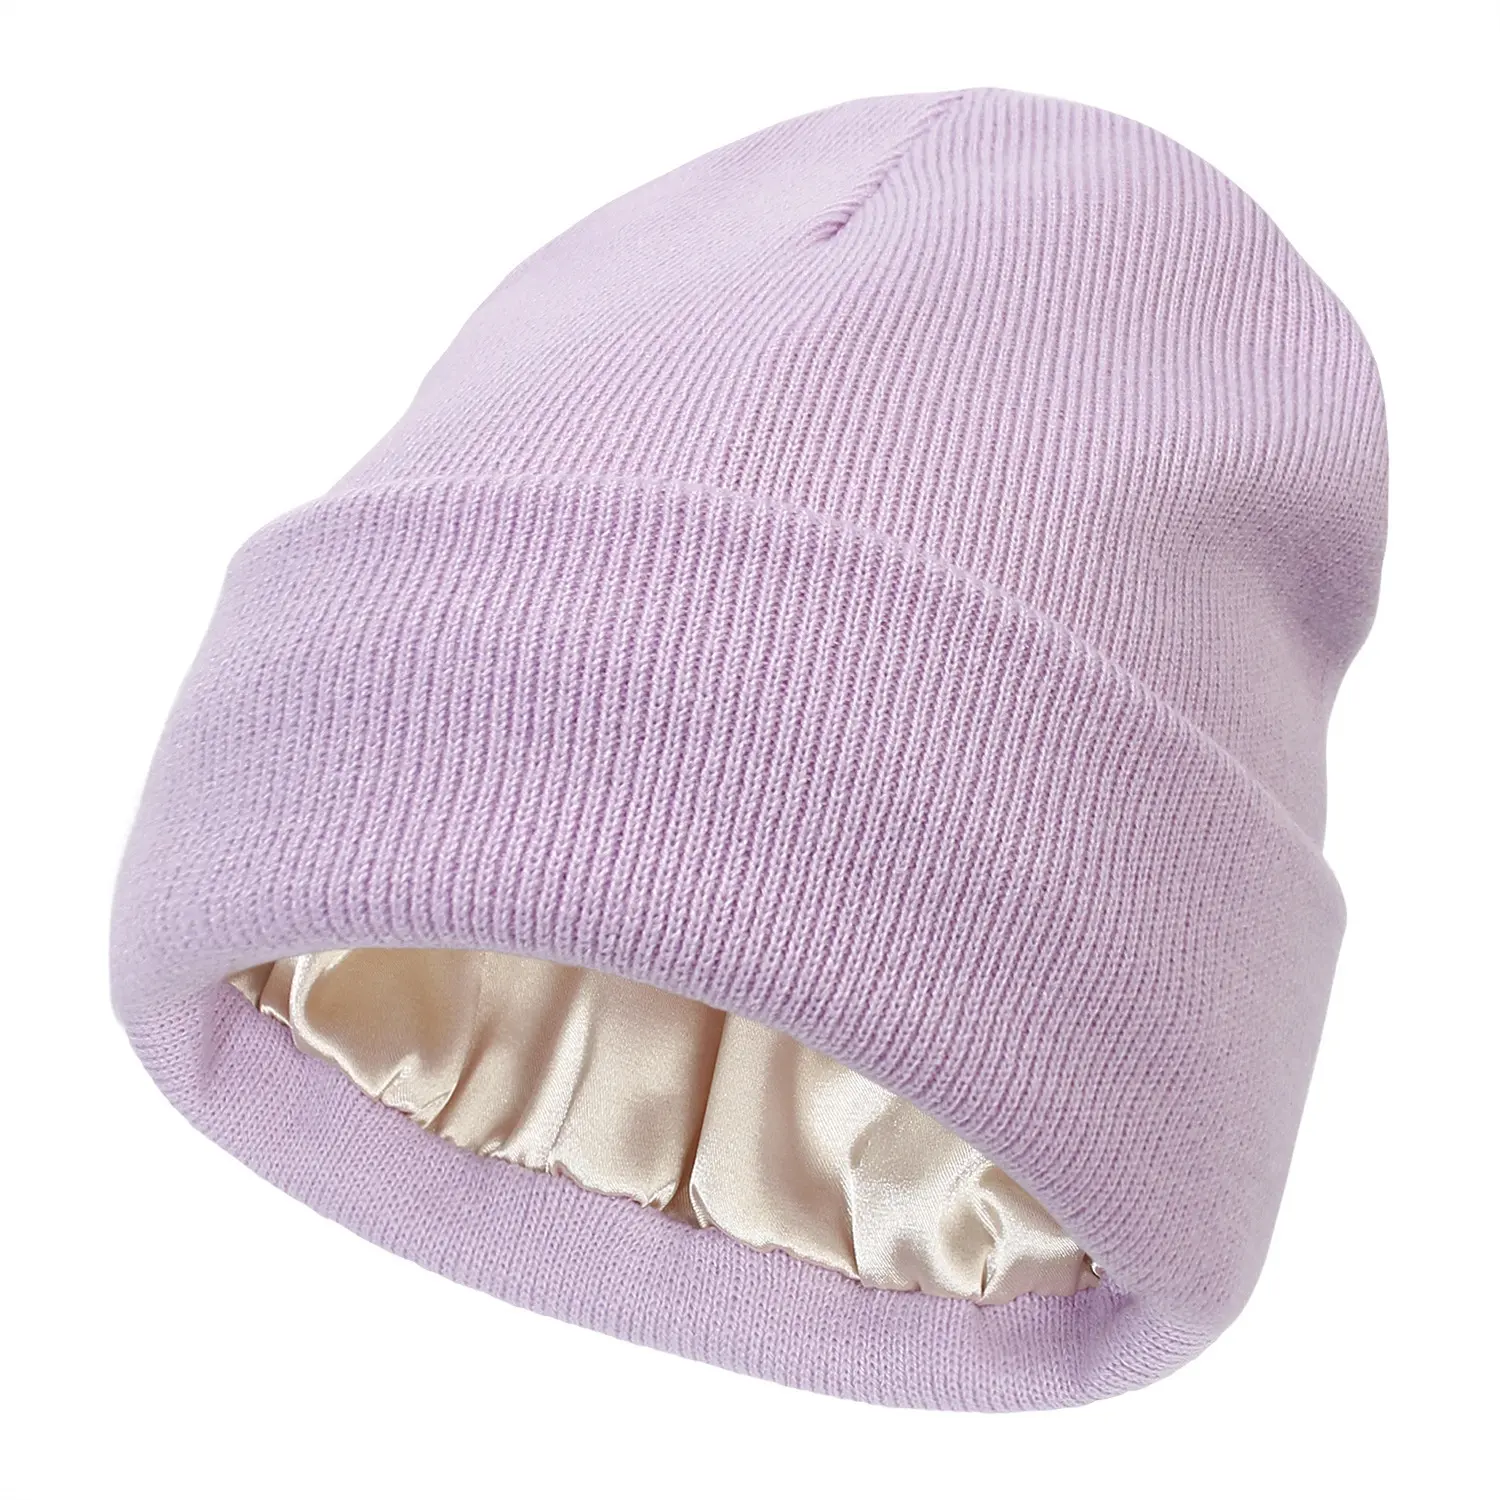 Commercio all'ingrosso popolare di vendita calda di alta qualità in acrilico bianco colorato morbido maglia cappelli invernali con fodera di raso colorato all'interno di berretti